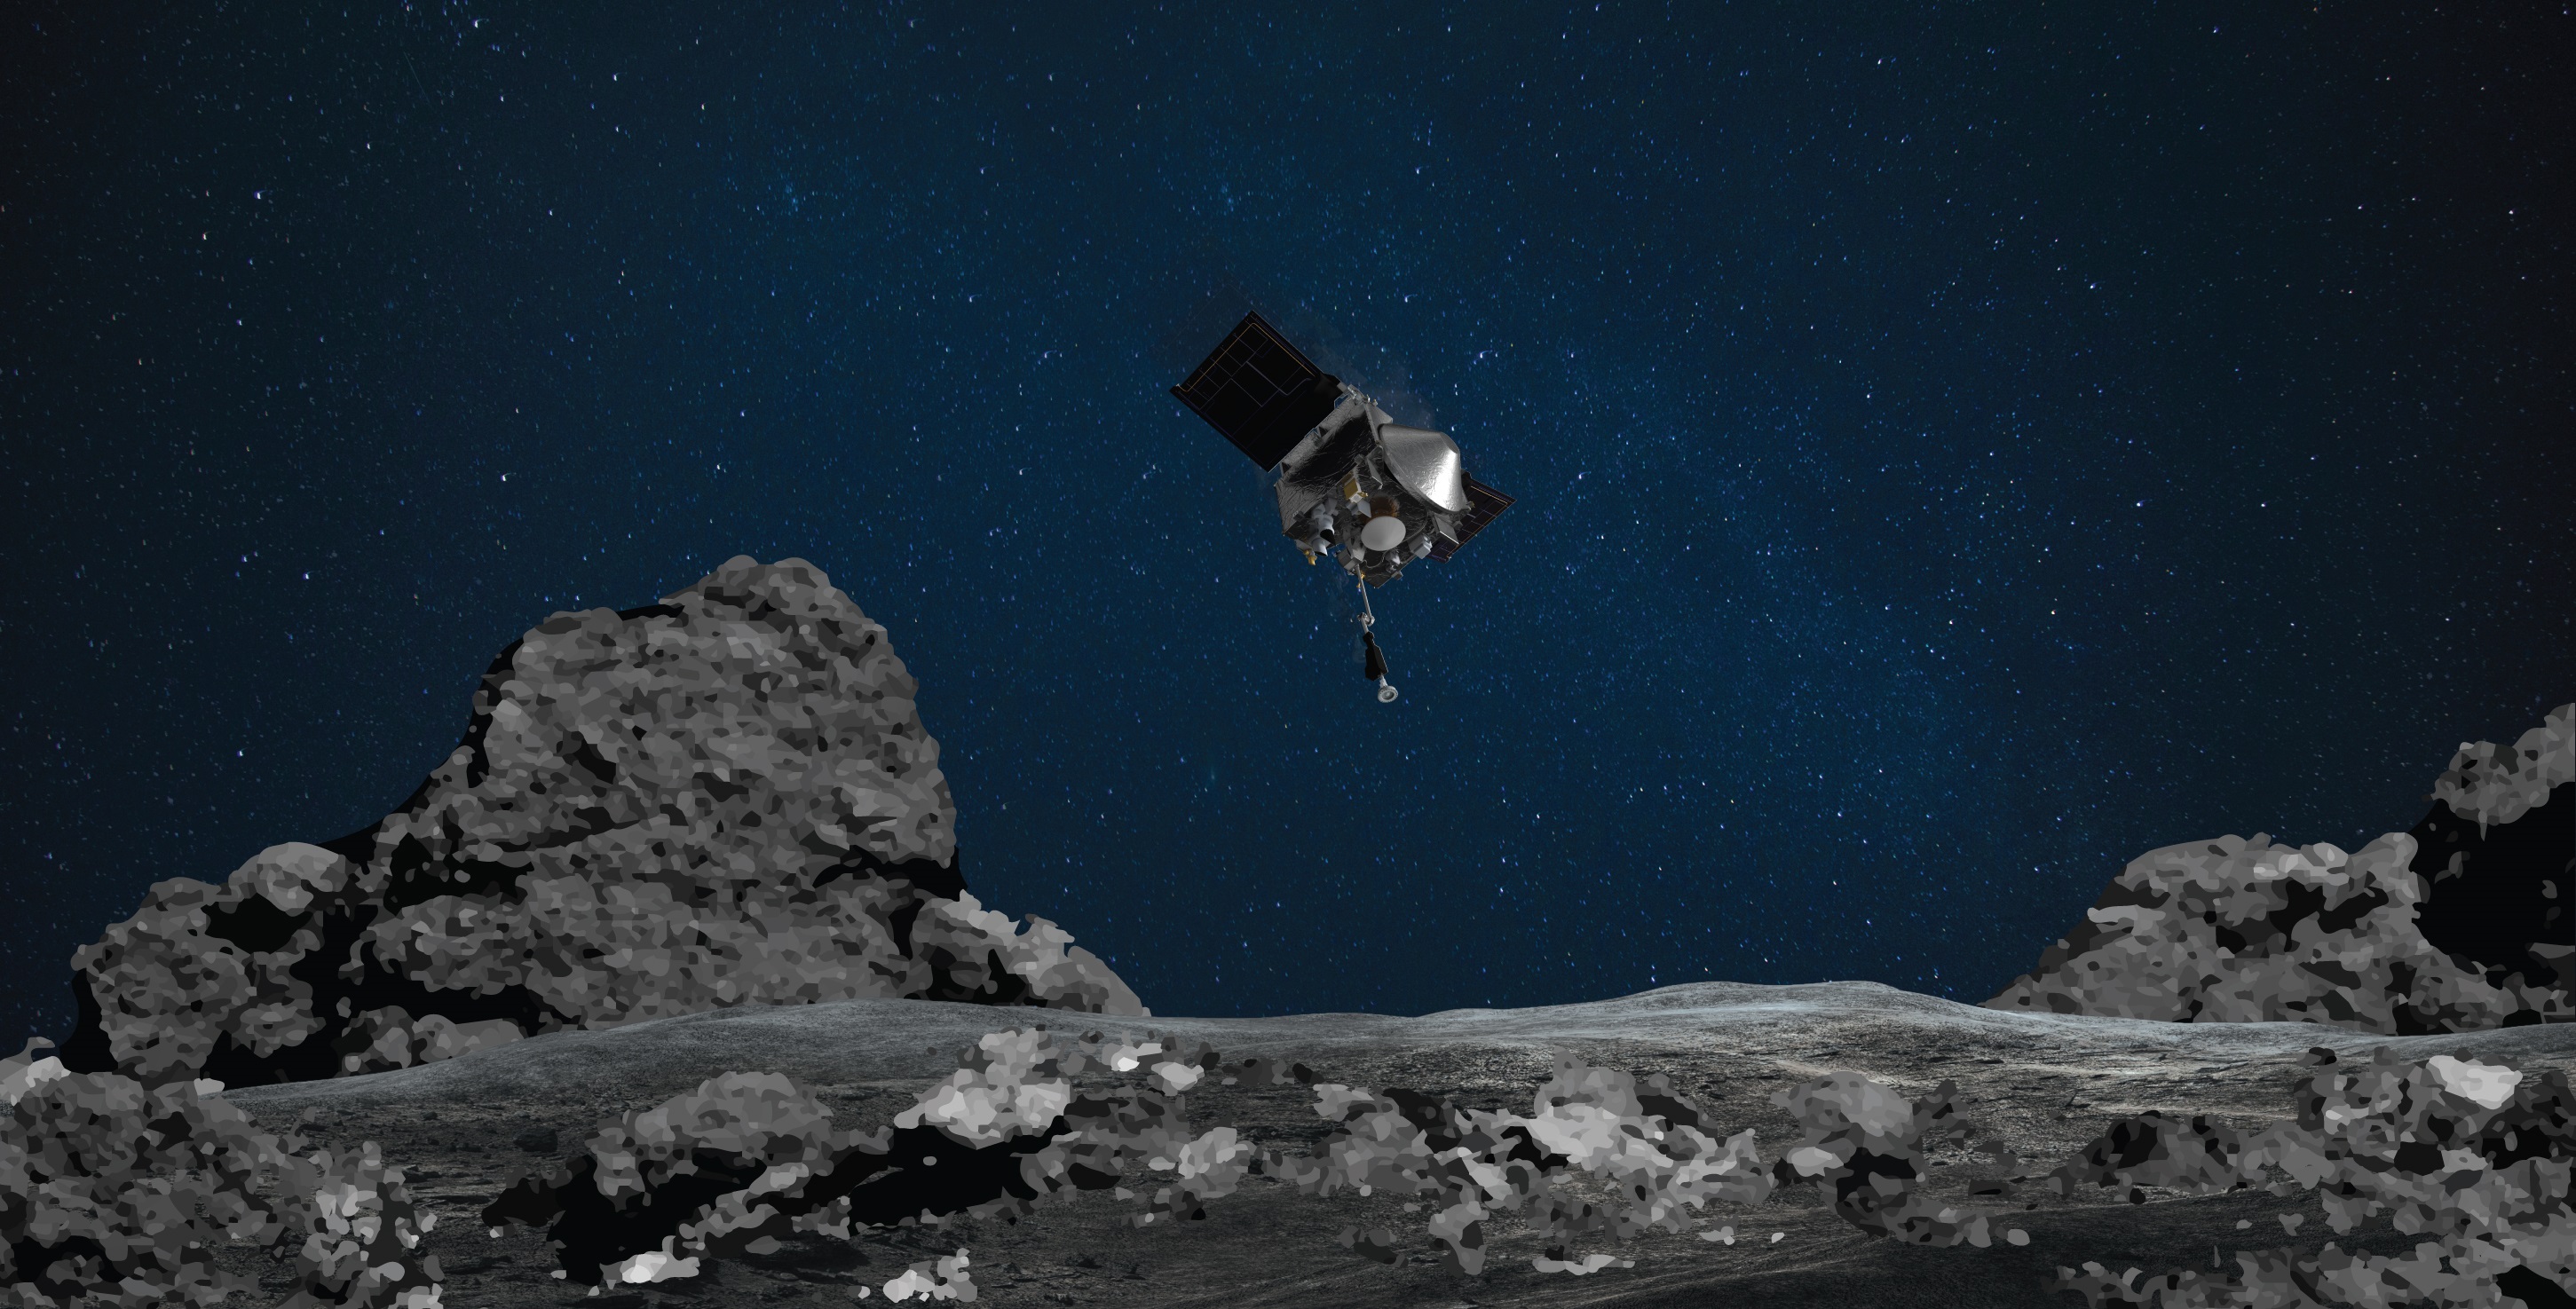 El equipo de OSIRIS-REx encontró una superficie llena de rocas en lugar de la playa de arena suave (NASA)
